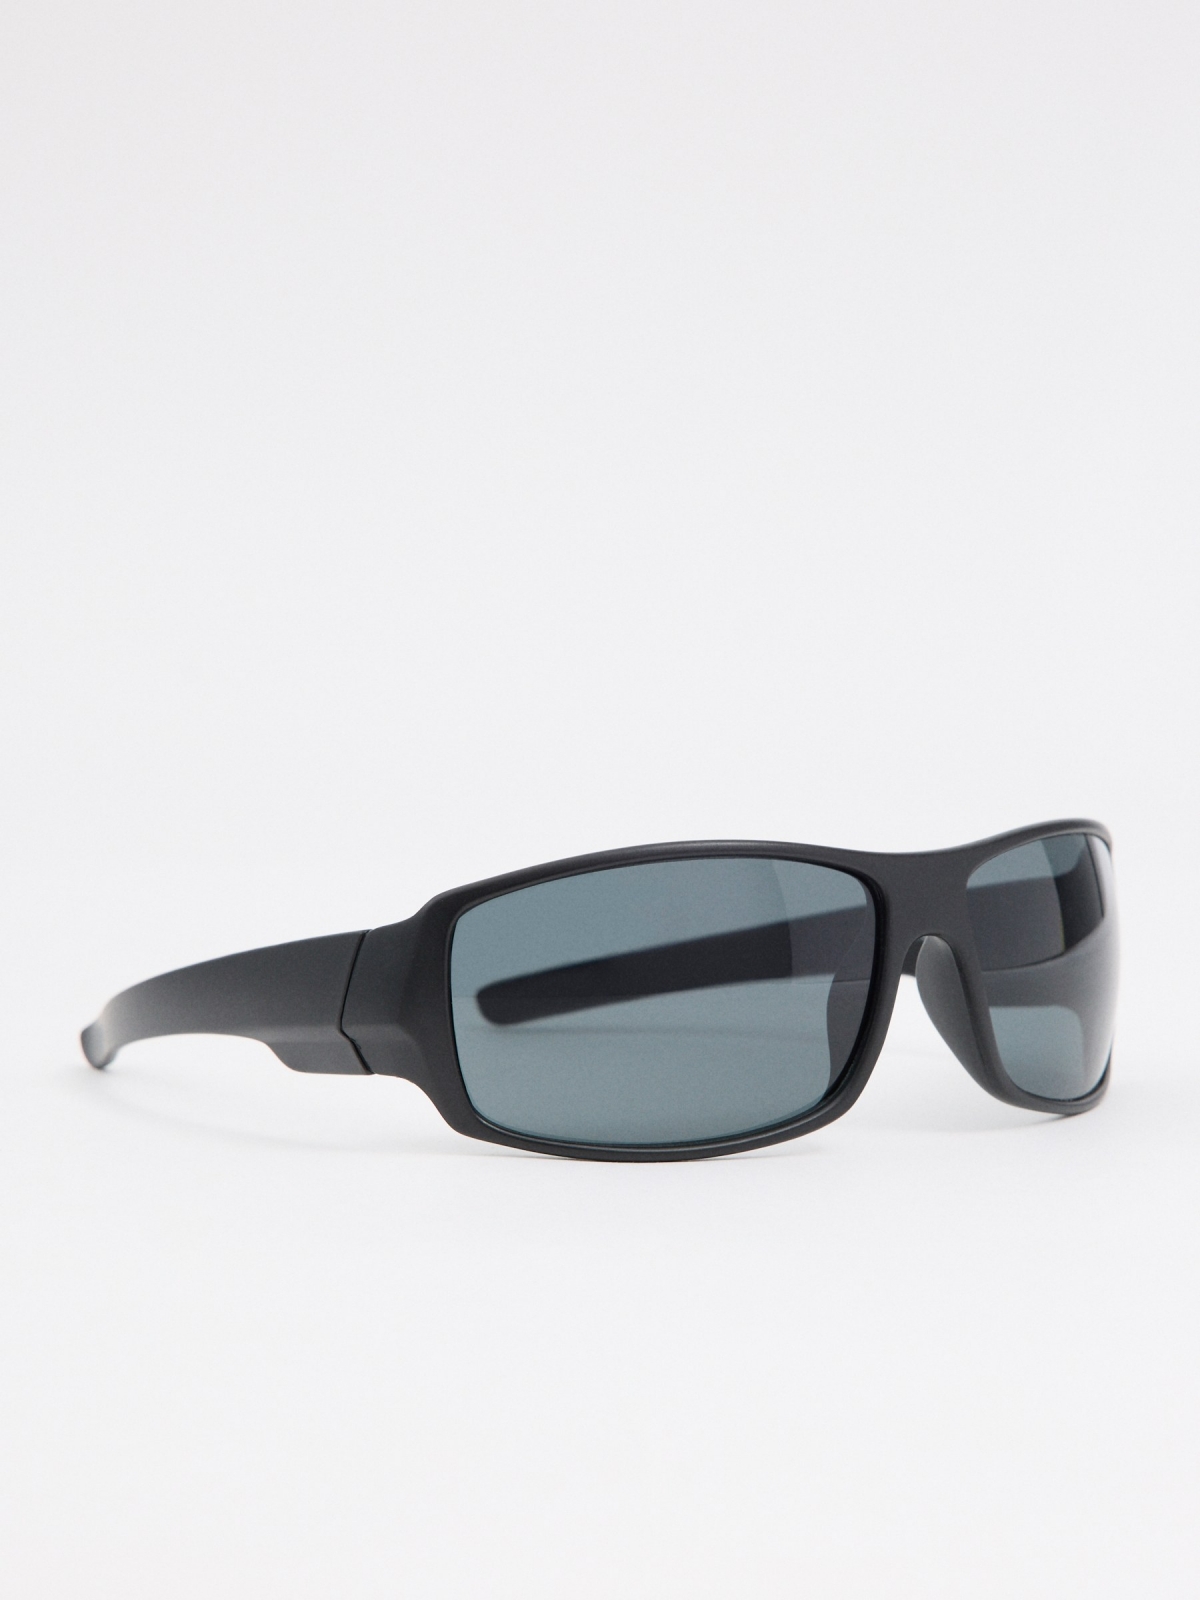 Óculos de sol com moldura preto primeiro plano com modelo